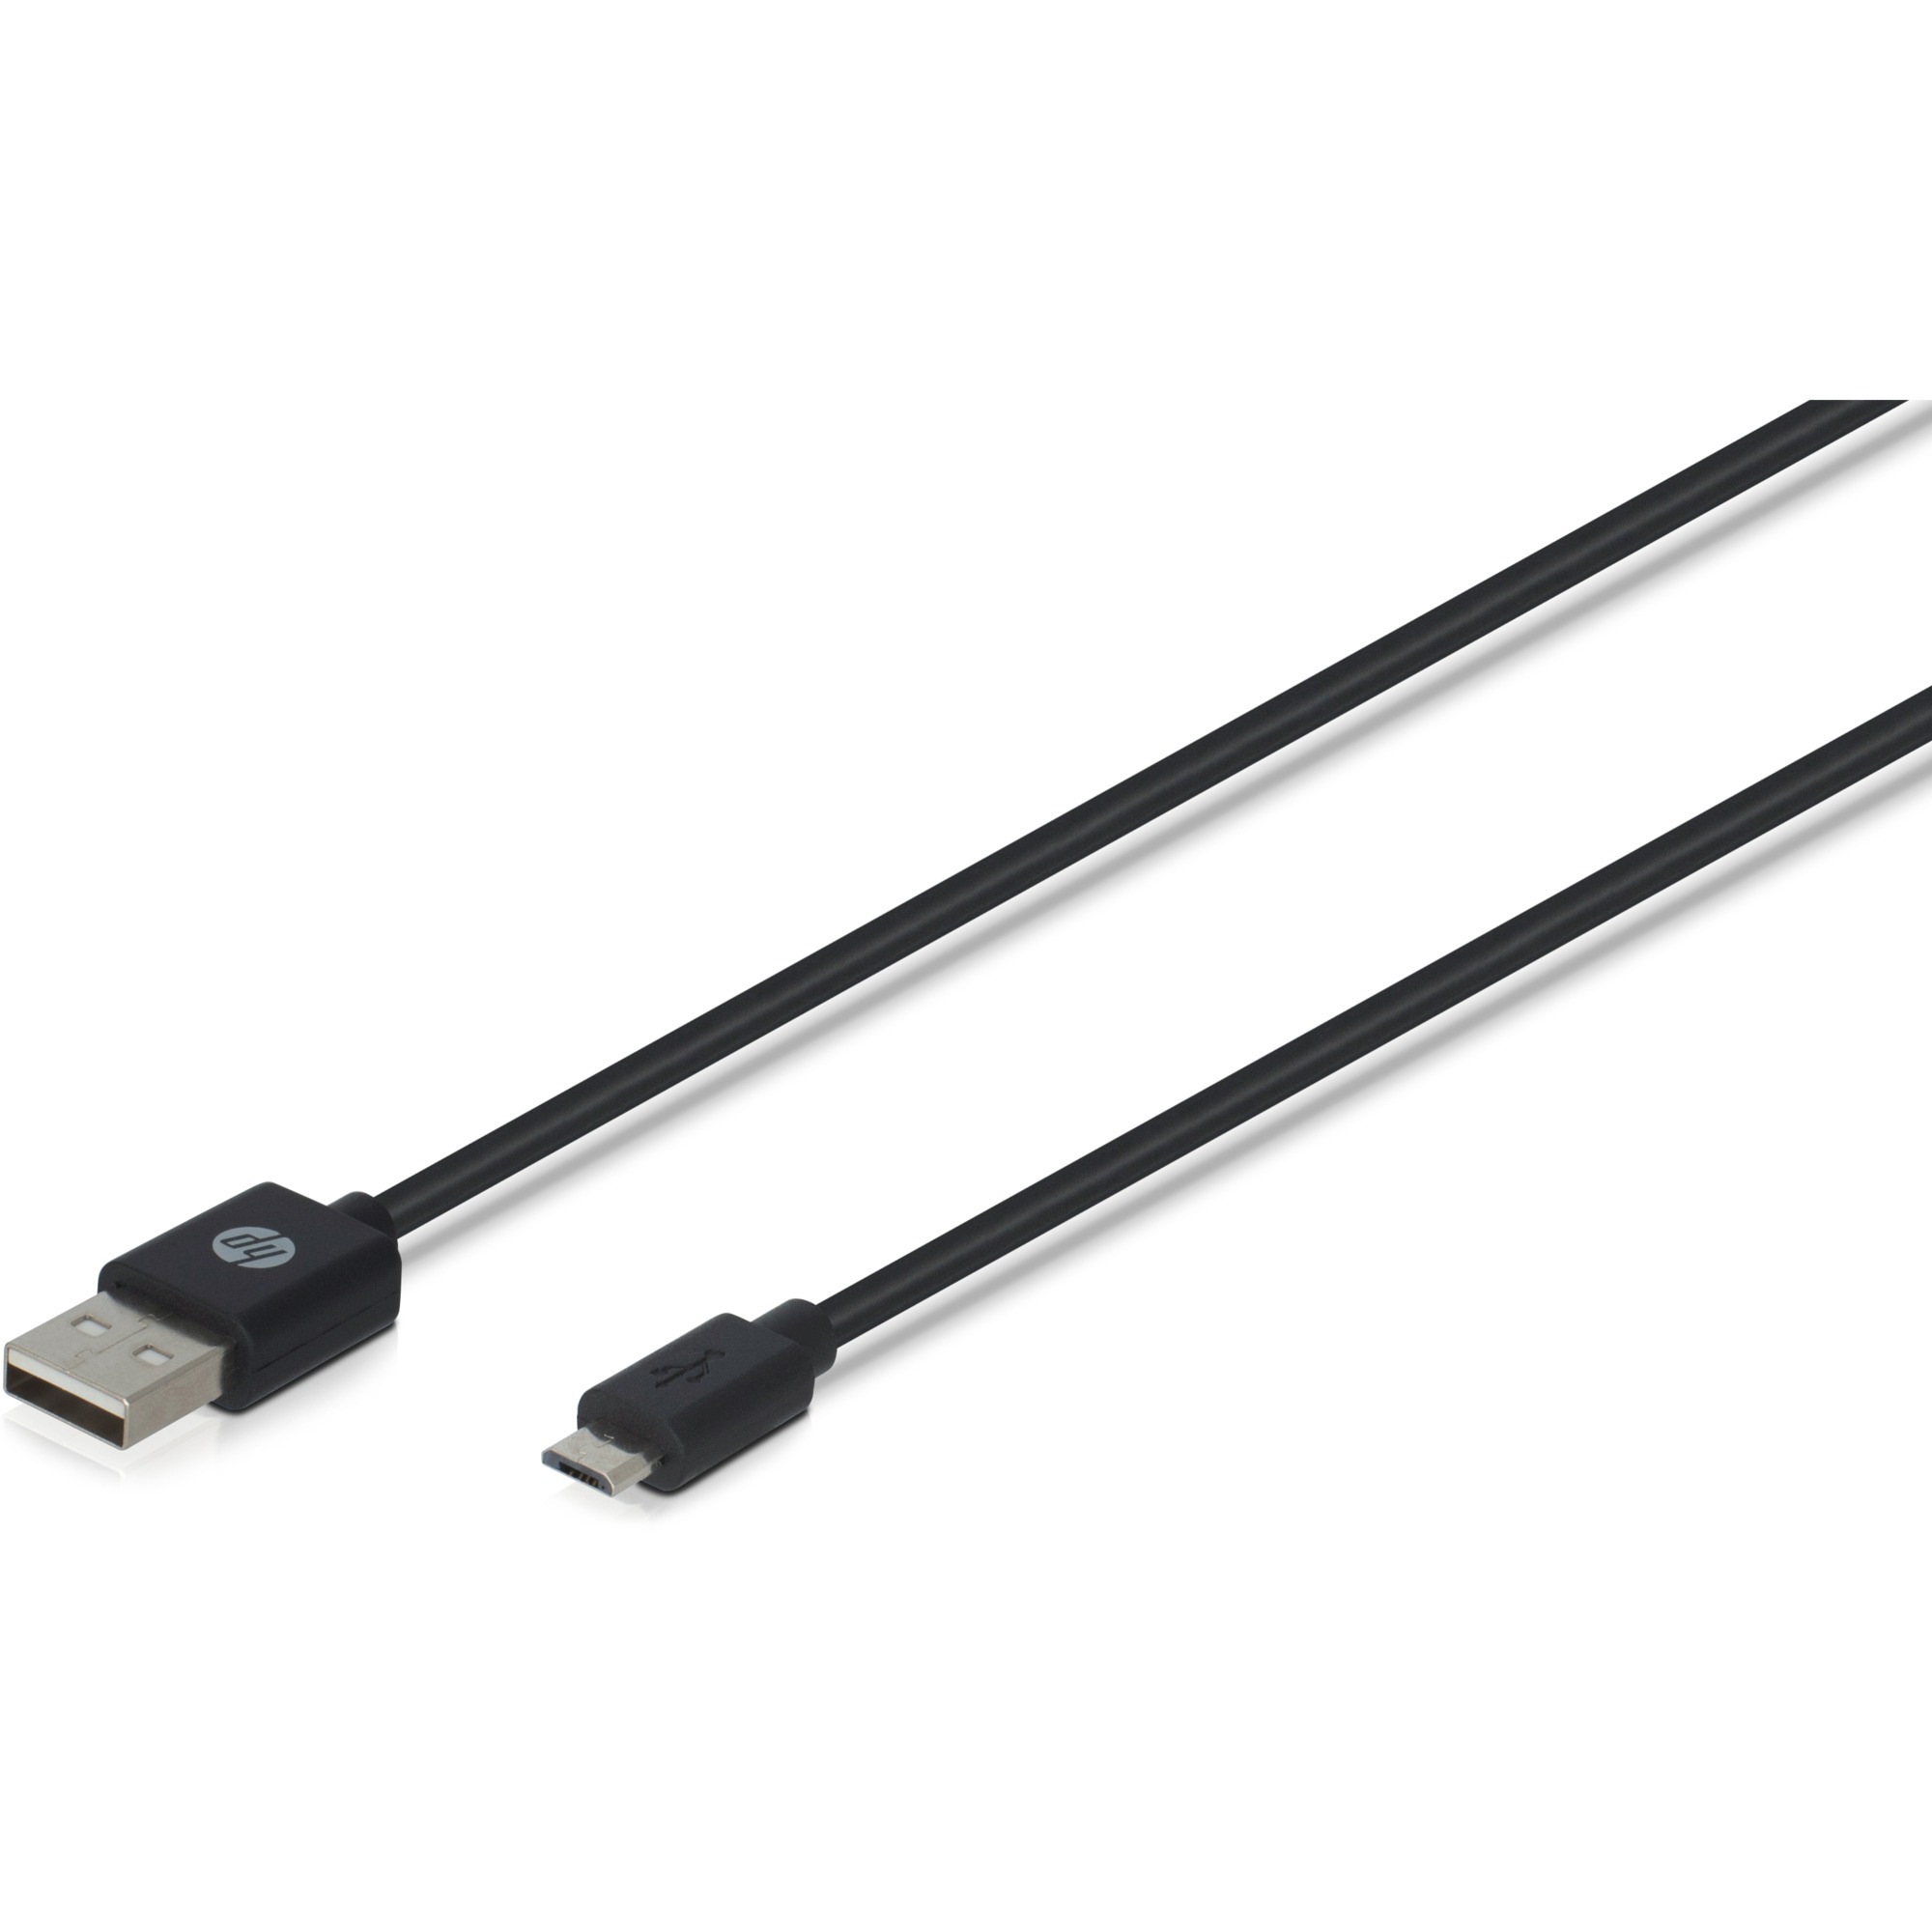 Image of Alternate - Kabel USB A (Stecker) > Micro USB (Stecker) online einkaufen bei Alternate